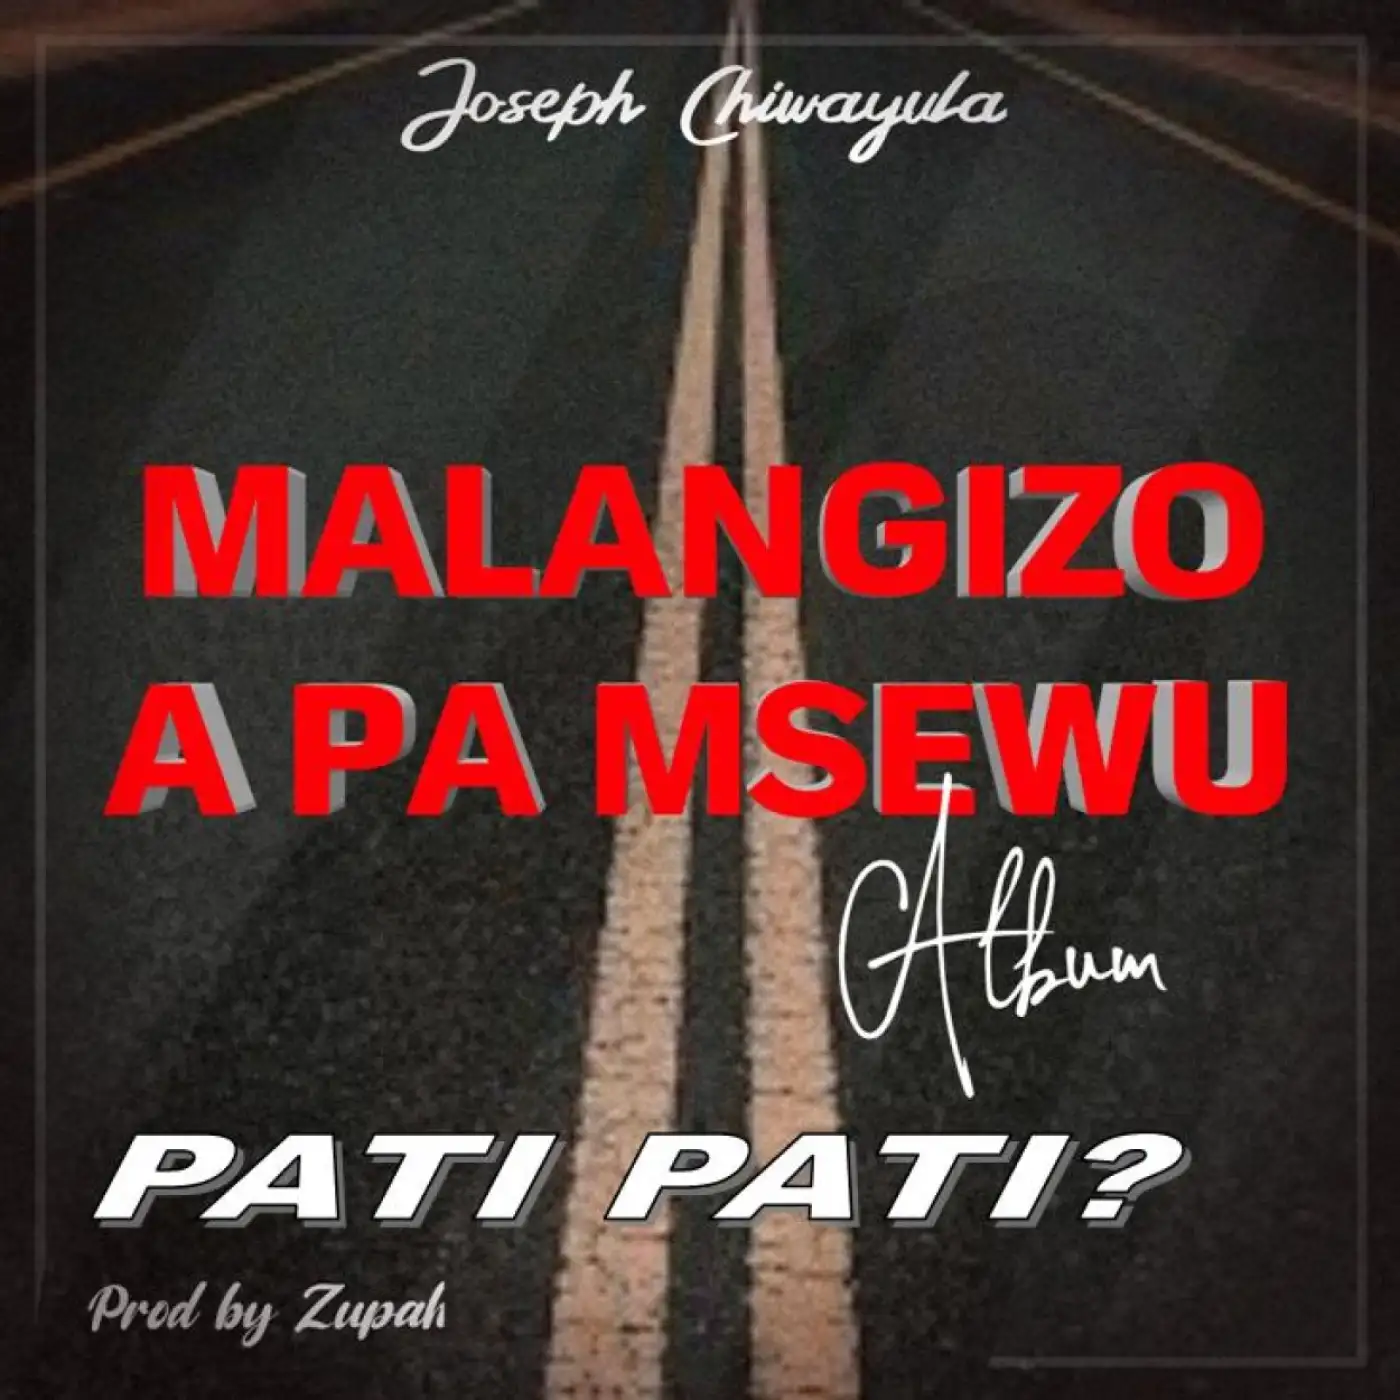 Joseph Chiwayula-Joseph Chiwayula - Pati Pati-song artwork cover